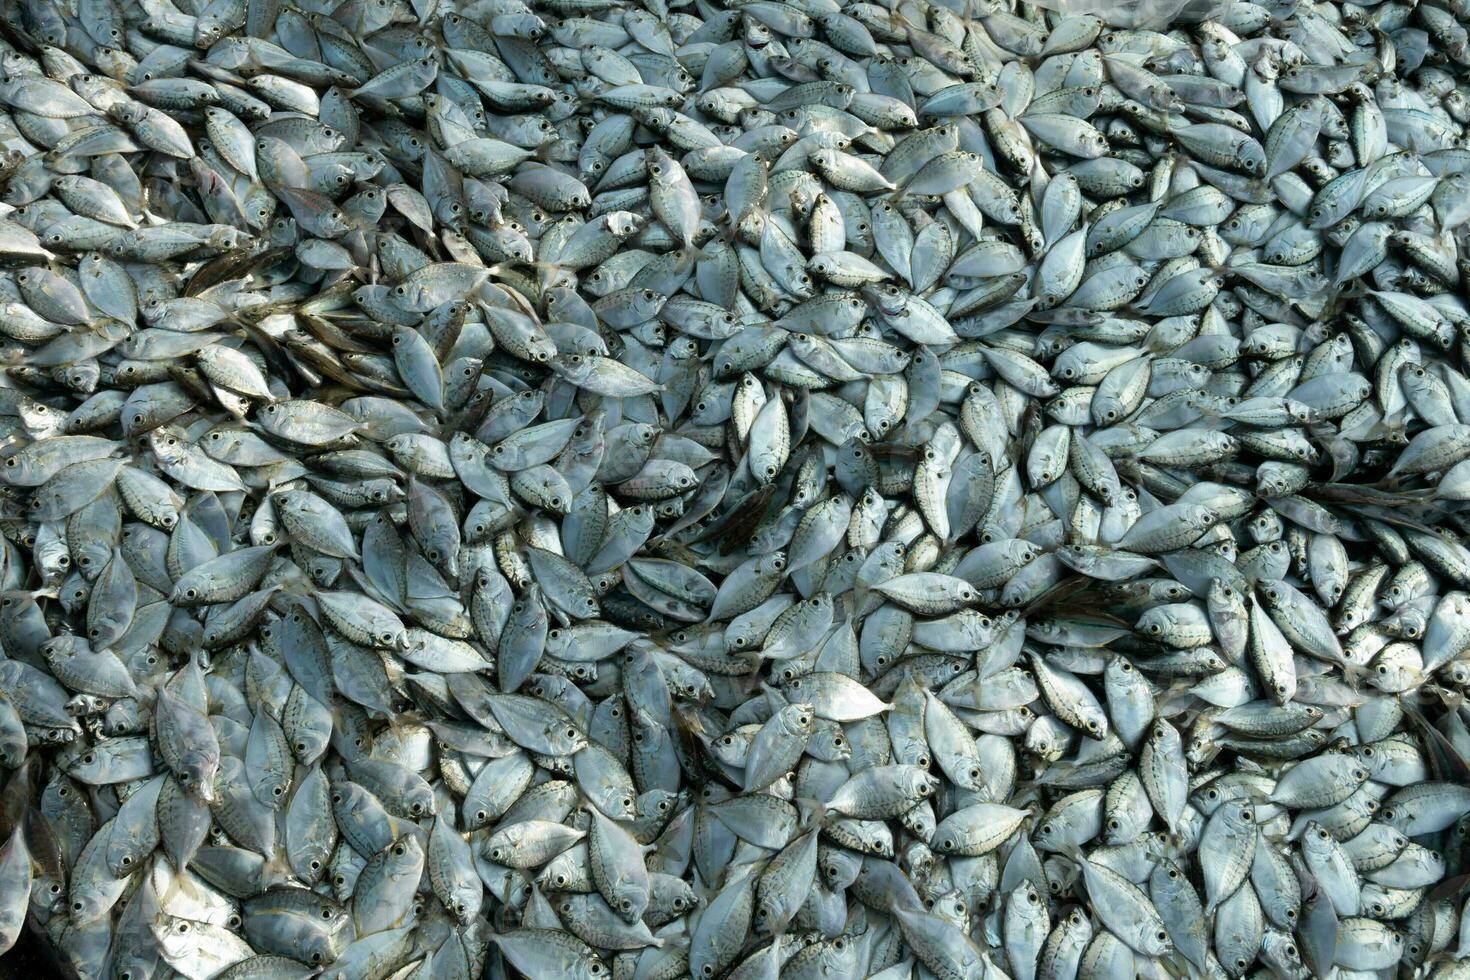 beaucoup Frais petit en bonne santé fermer argent brut non cuit sardine anchois basse poisson animal capture de bleu océan mer méditerranéen comme une ingrédient pour Fruit de mer et nourriture marché industrie restaurant épicerie photo